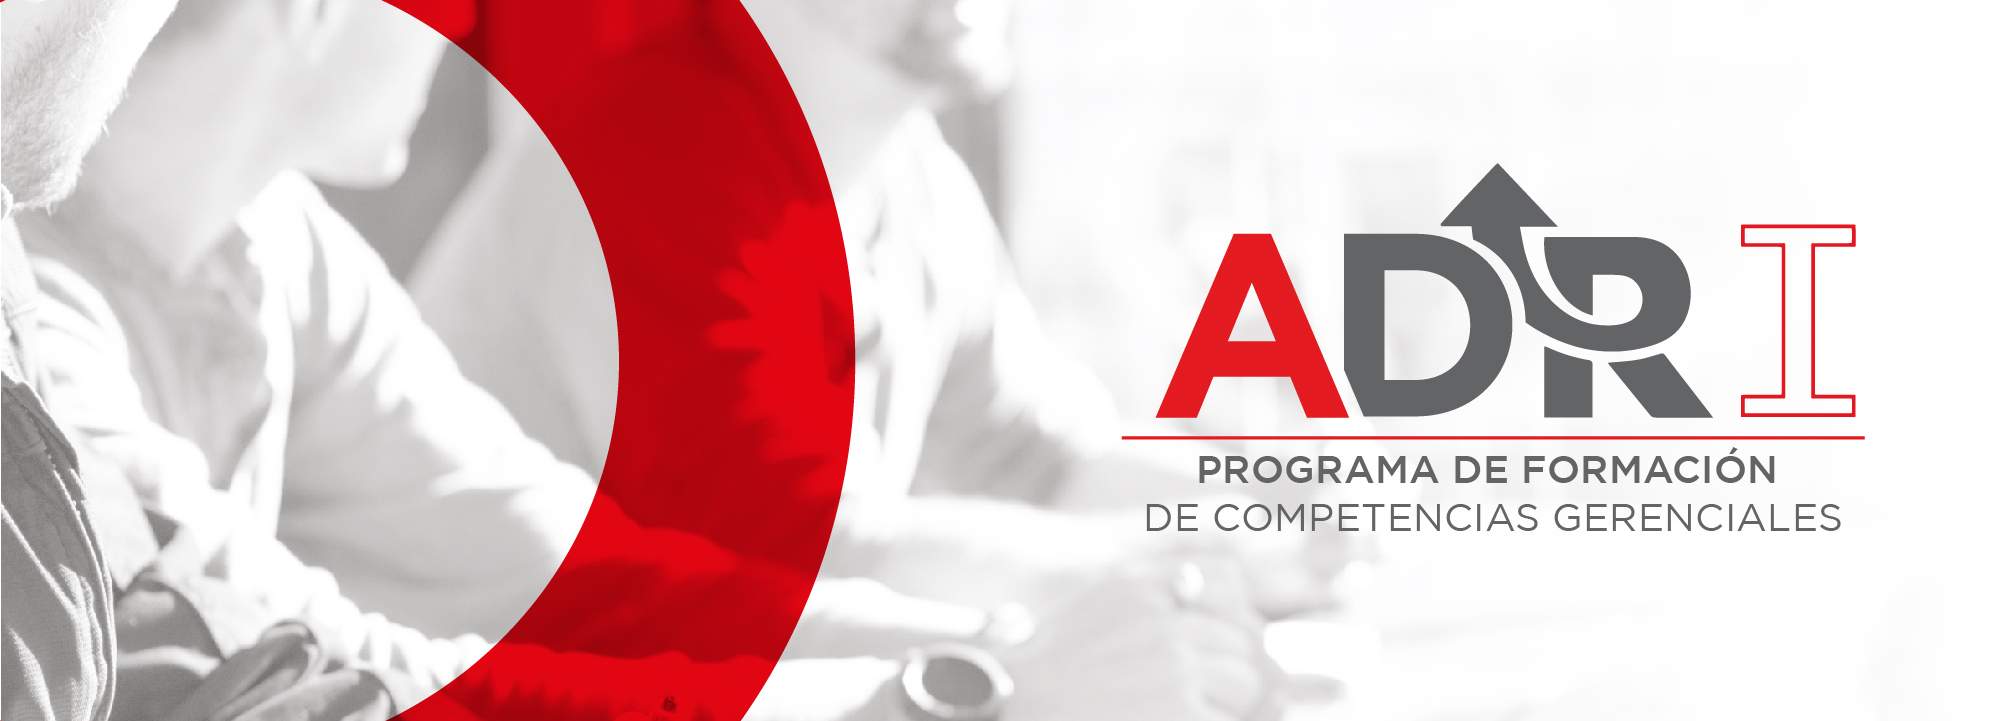 ADR I | Programa de Formación de Competencias Gerenciales GAFI-CAP015